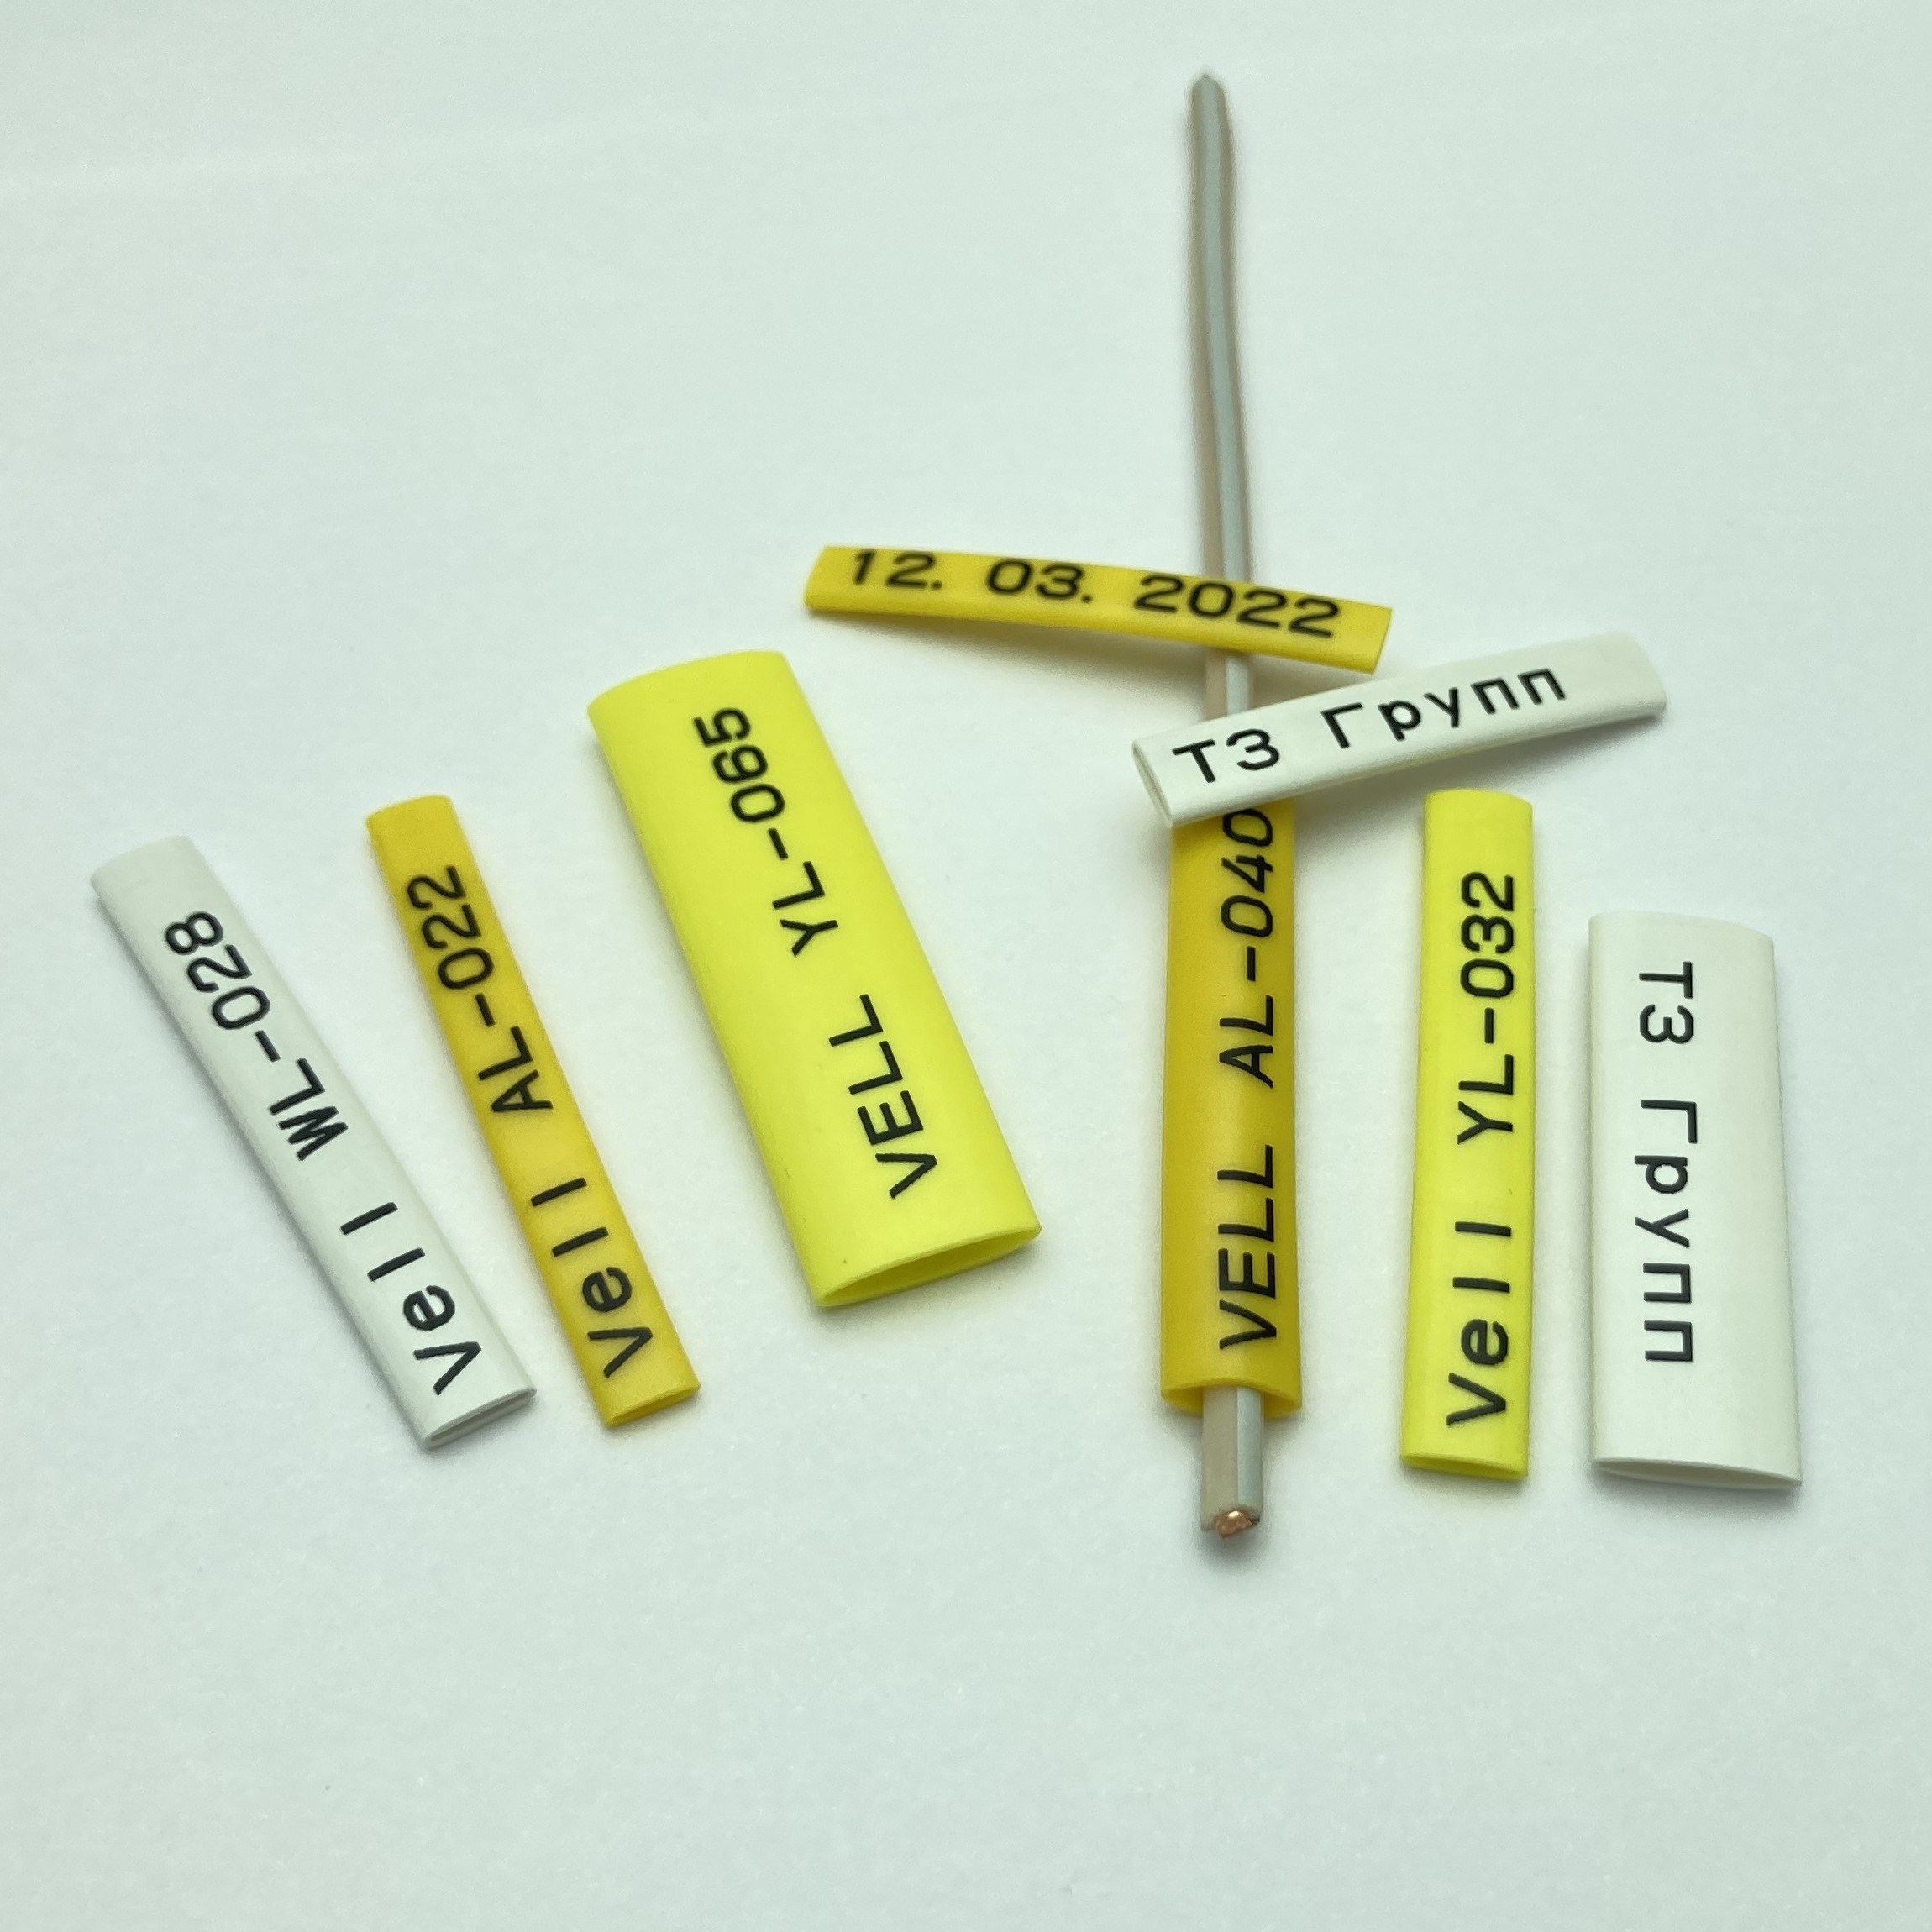 Фото Профиль ПВХ овальный Vell YL-028 для маркировки проводов, Ø 2,8 мм, 200 метров, желтый, аналог Partex PO-04 (самозатухающий) {378010} (4)